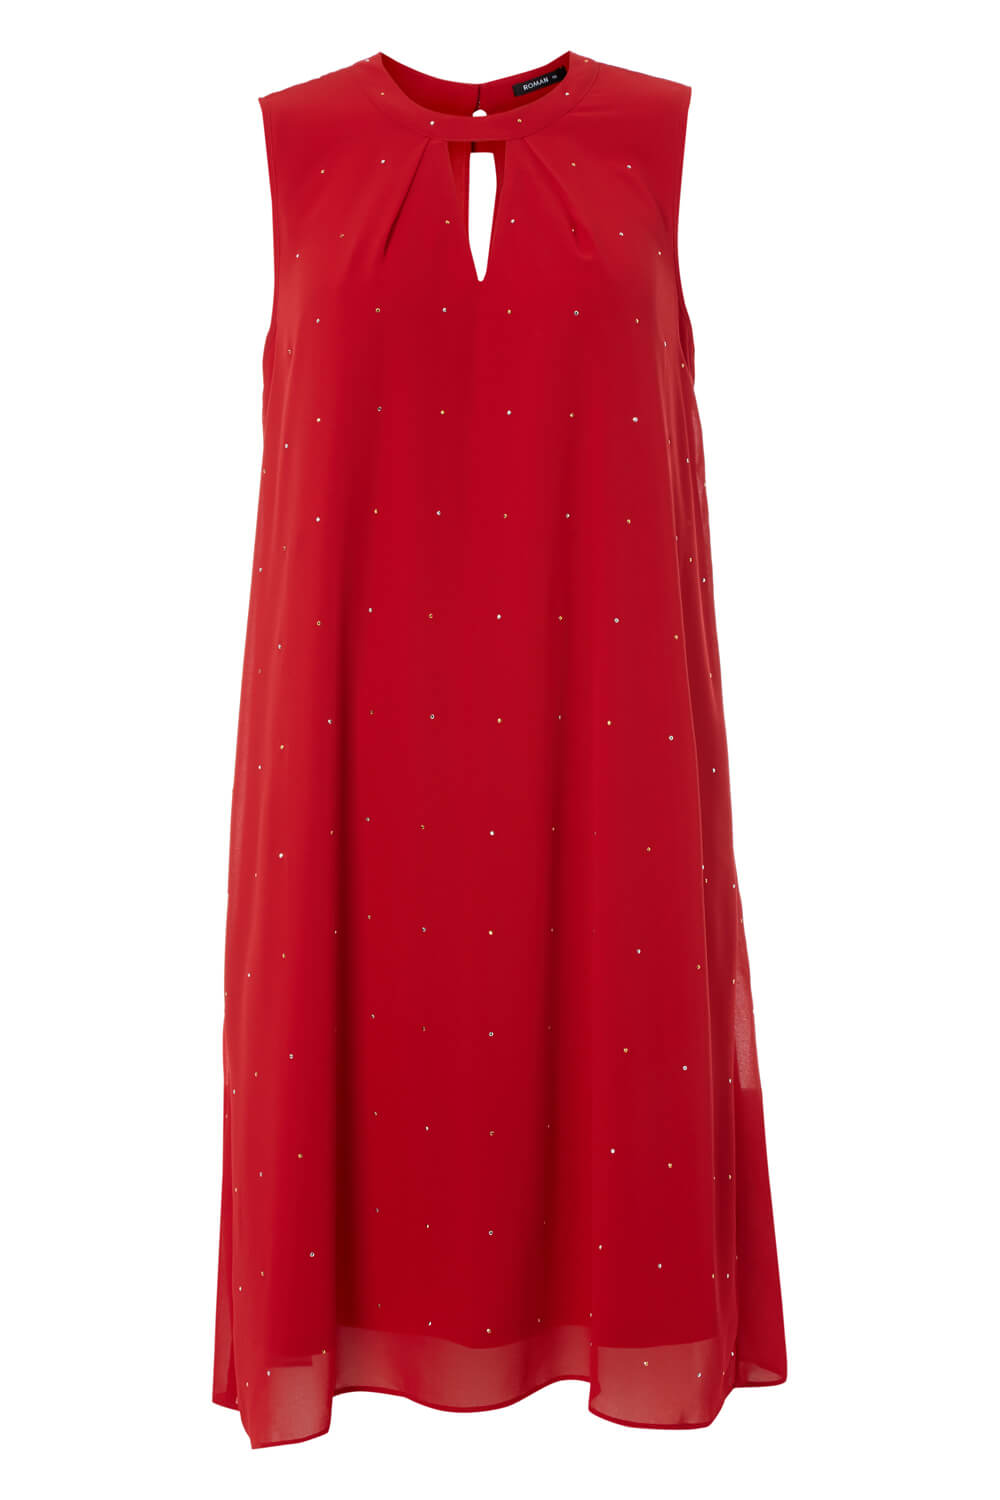 Red Embellished Keyhole Swing Dress, Image 5 of 5